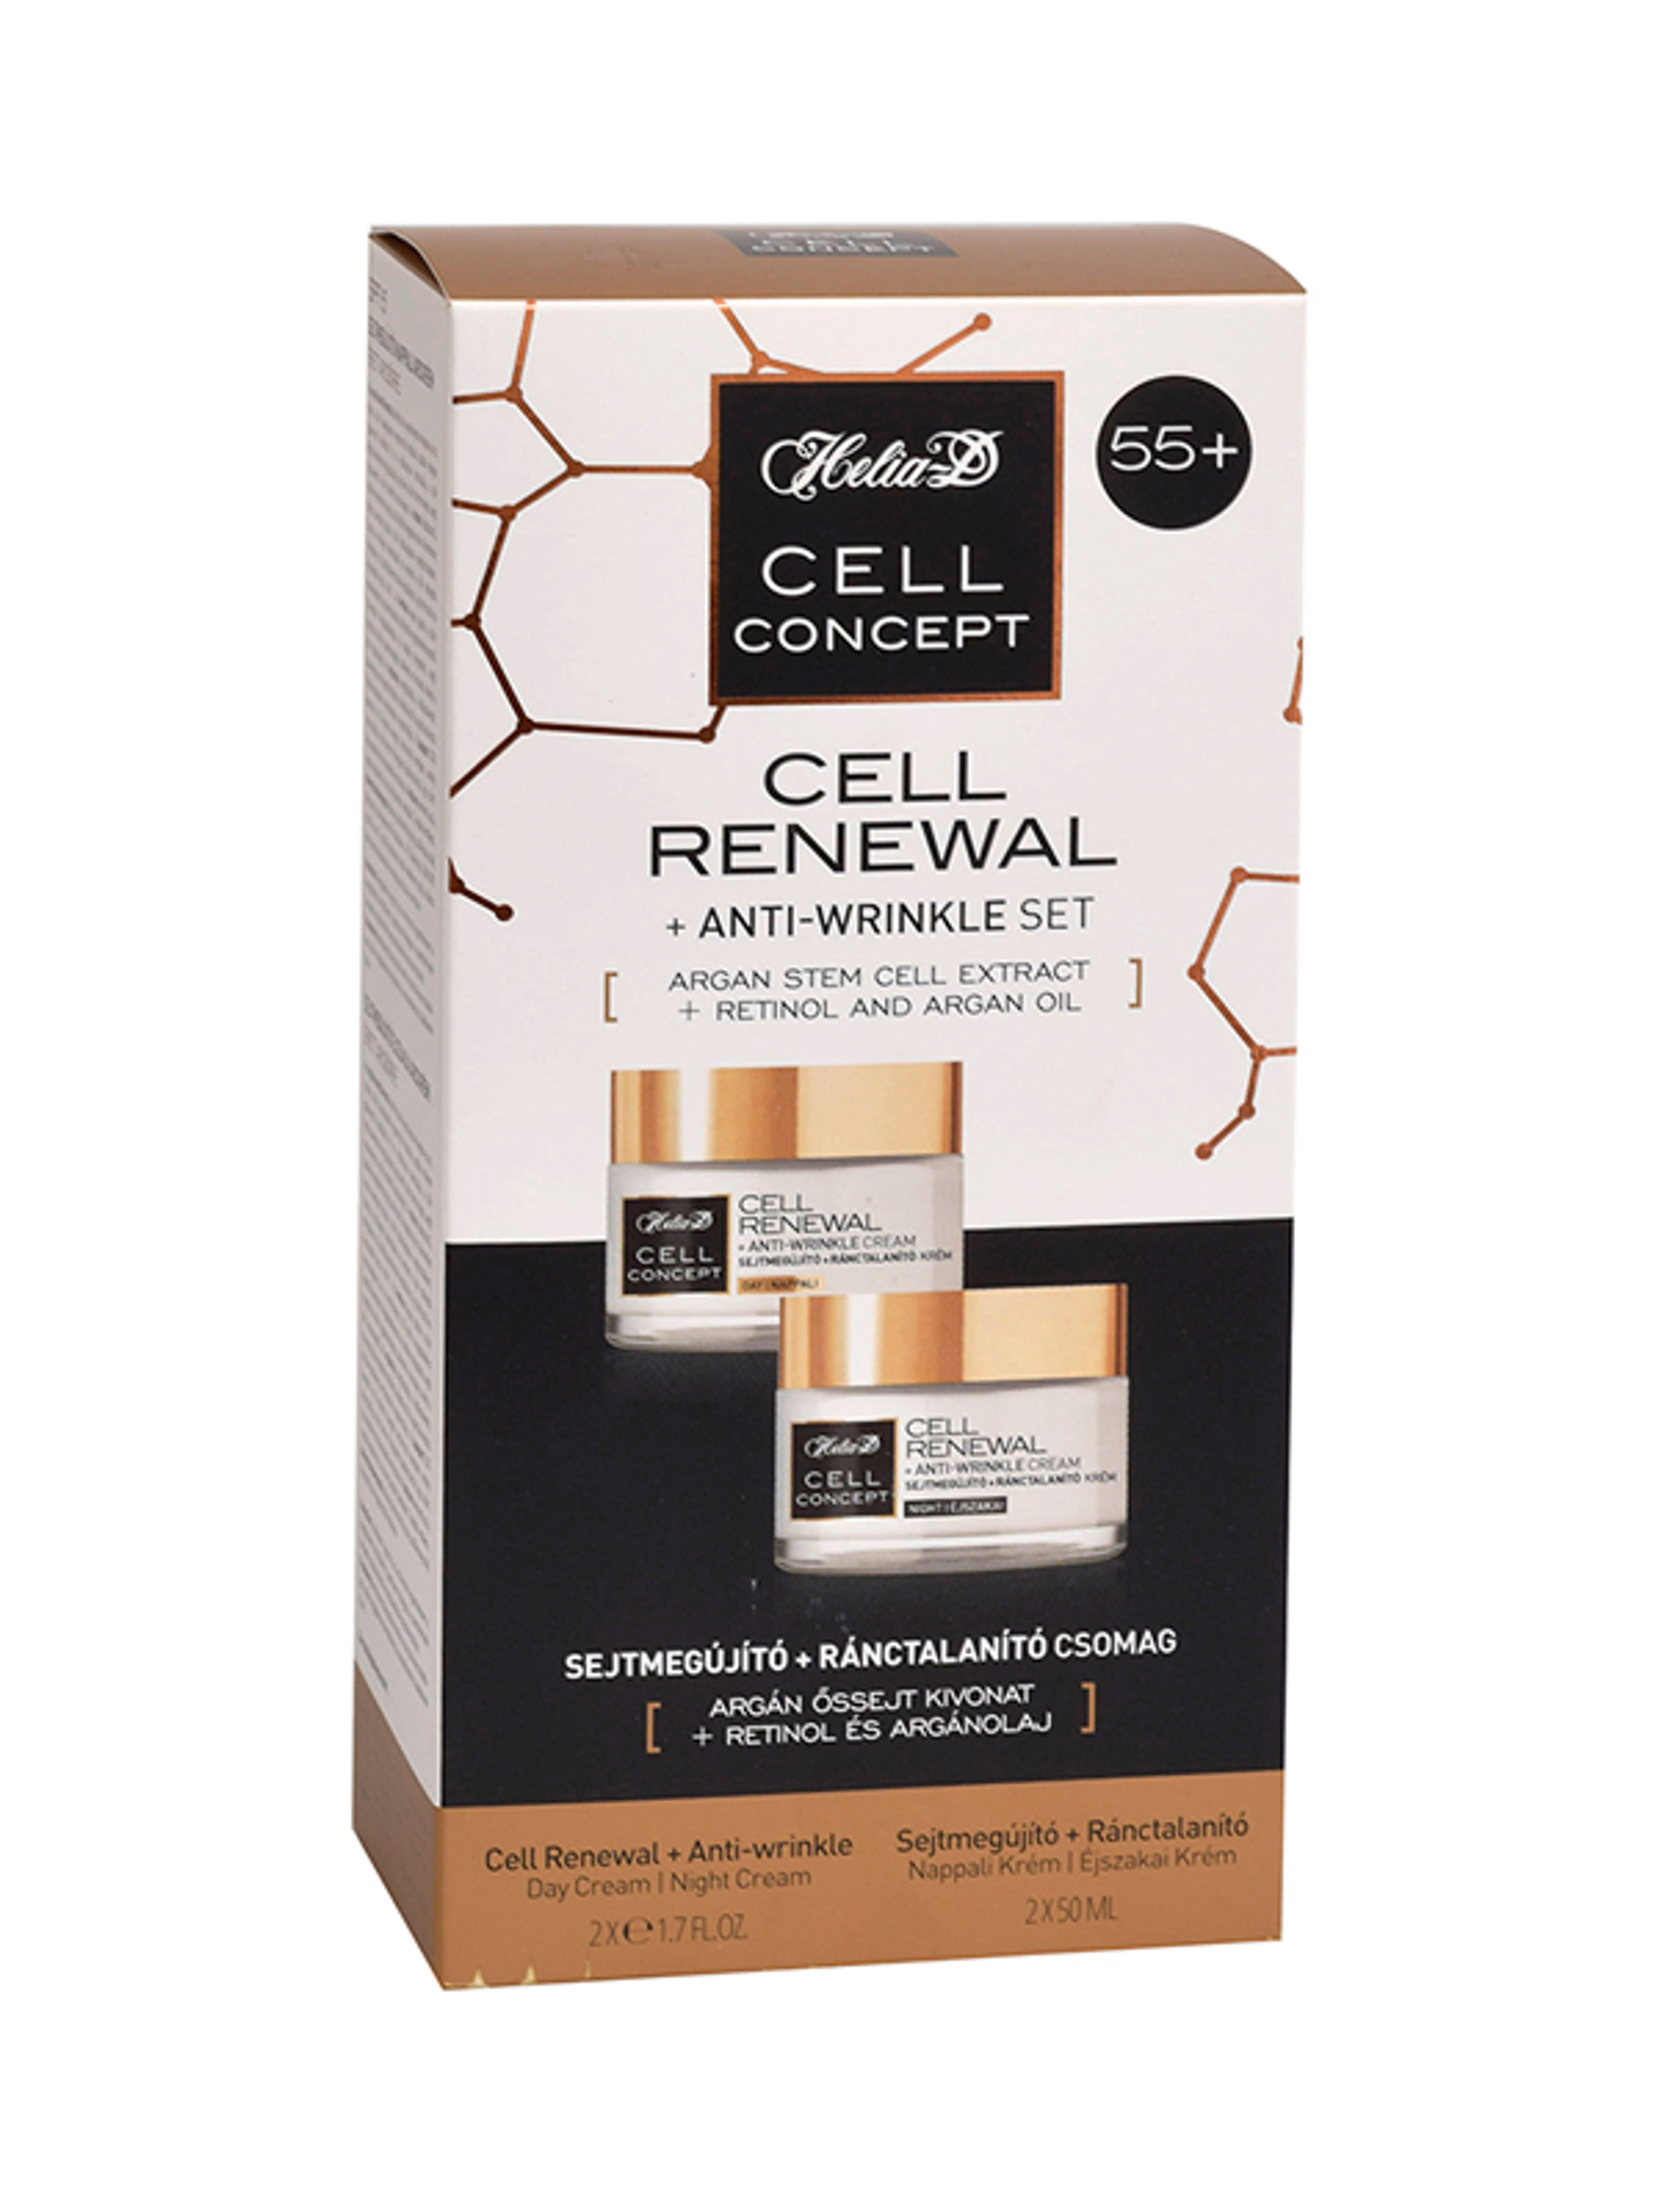 Helia-D Cell Concept sejtmegújító ránctalanító csomag 55+ 2x50 ml - 100 ml-1